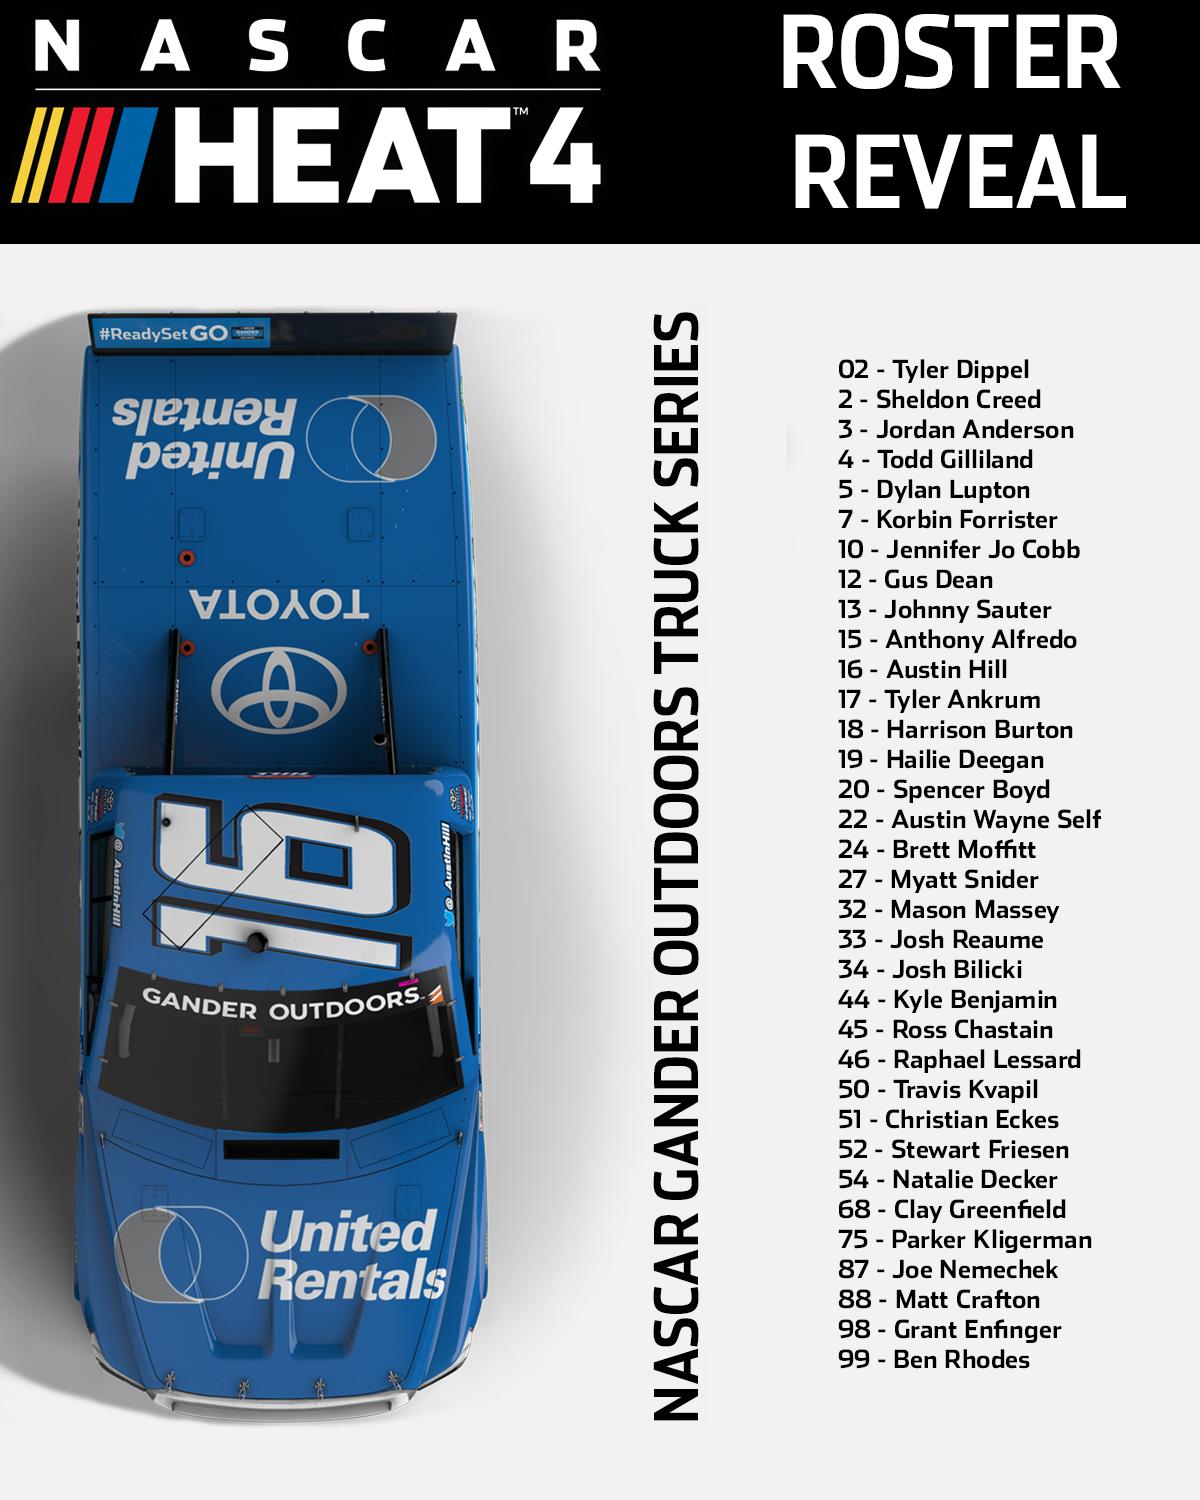 Nascar Heat 4 Trucks Roster Reveal.jpg